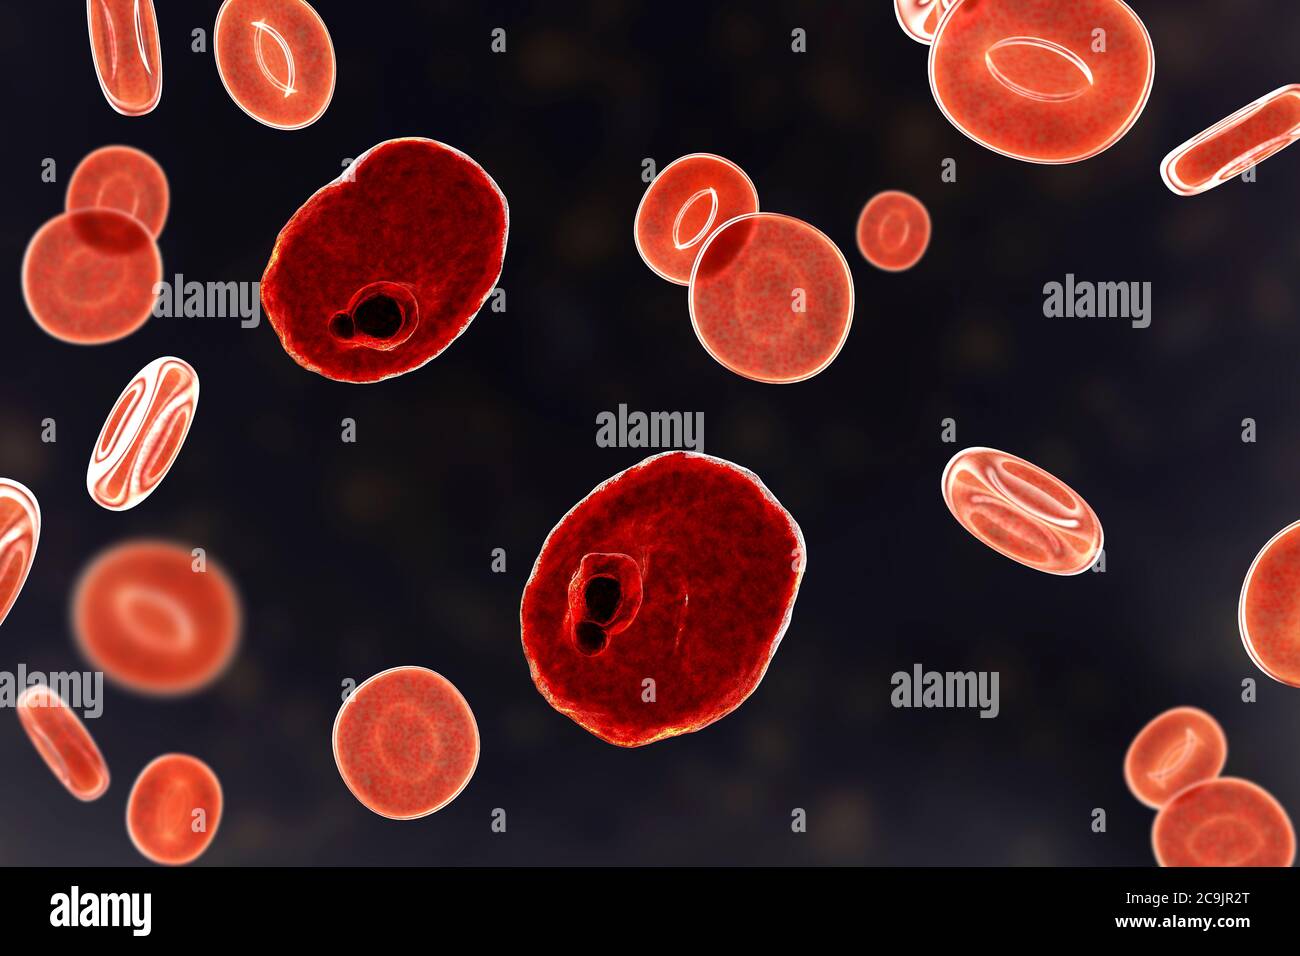 Plasmodium ovale Protozoan in roten Blutkörperchen, Computer-Illustration. P. ovale ist der Erreger der gutartigen tertianischen Malaria, auch als Eizellen bekannt Stockfoto